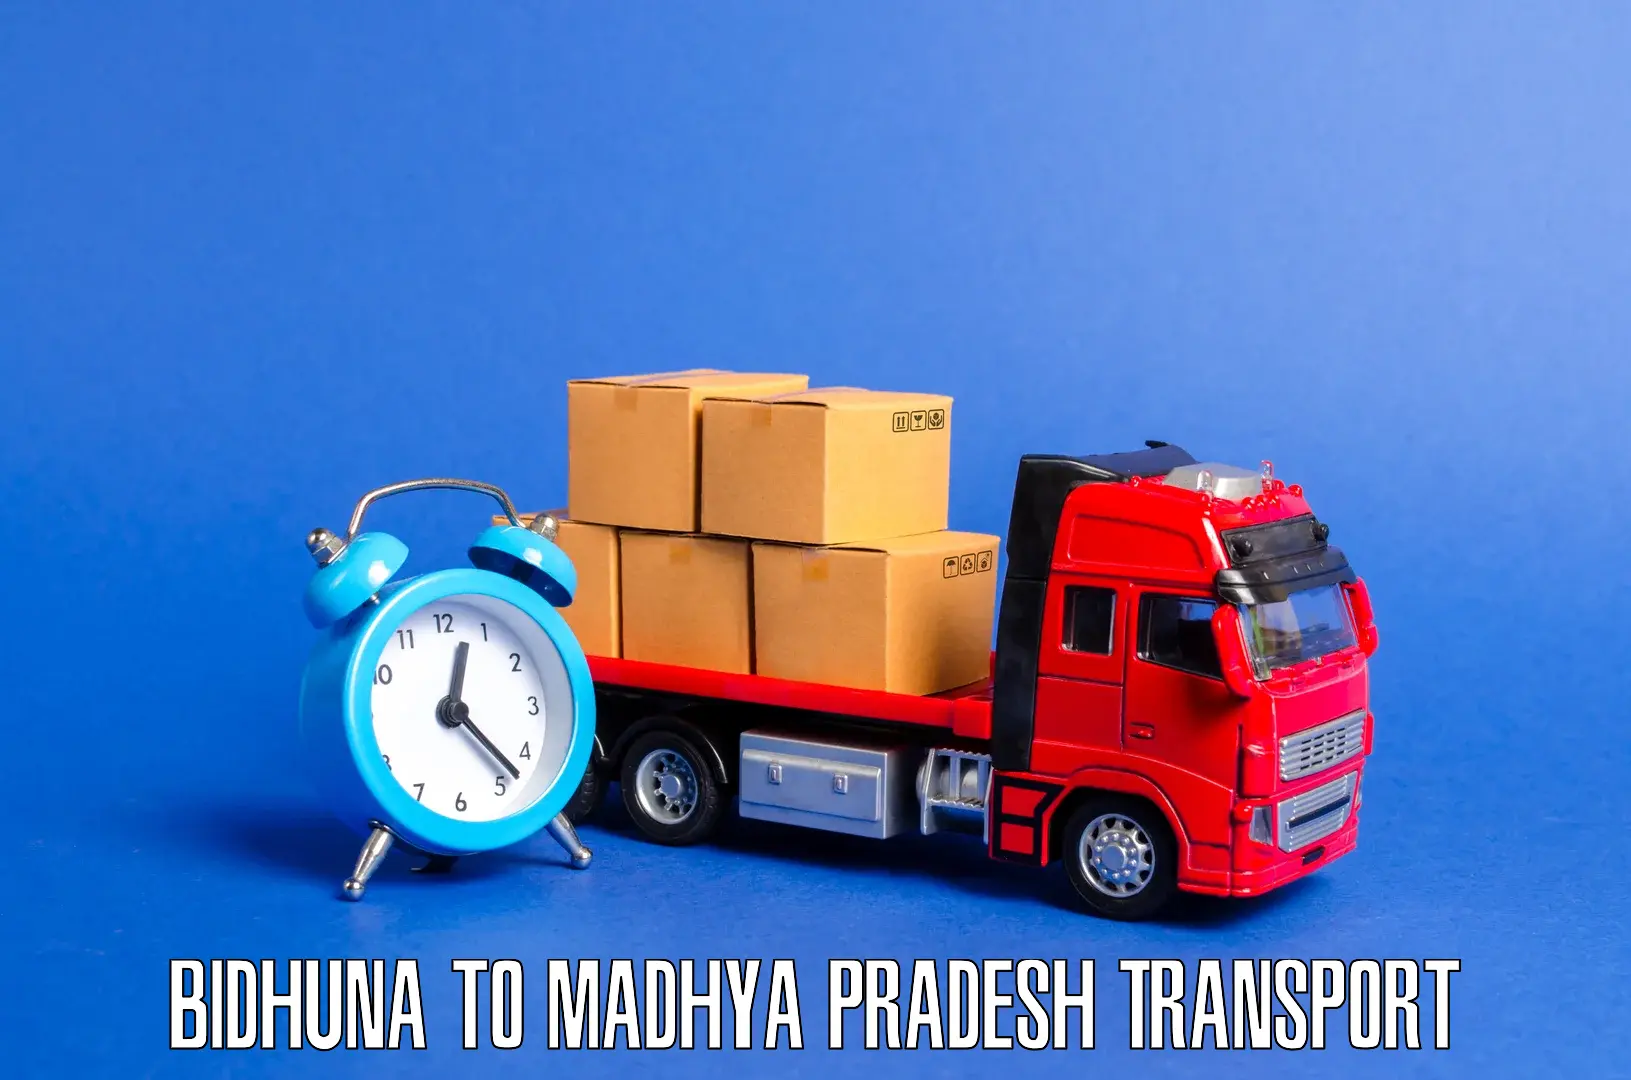 Transport bike from one state to another Bidhuna to Vijayraghavgarh